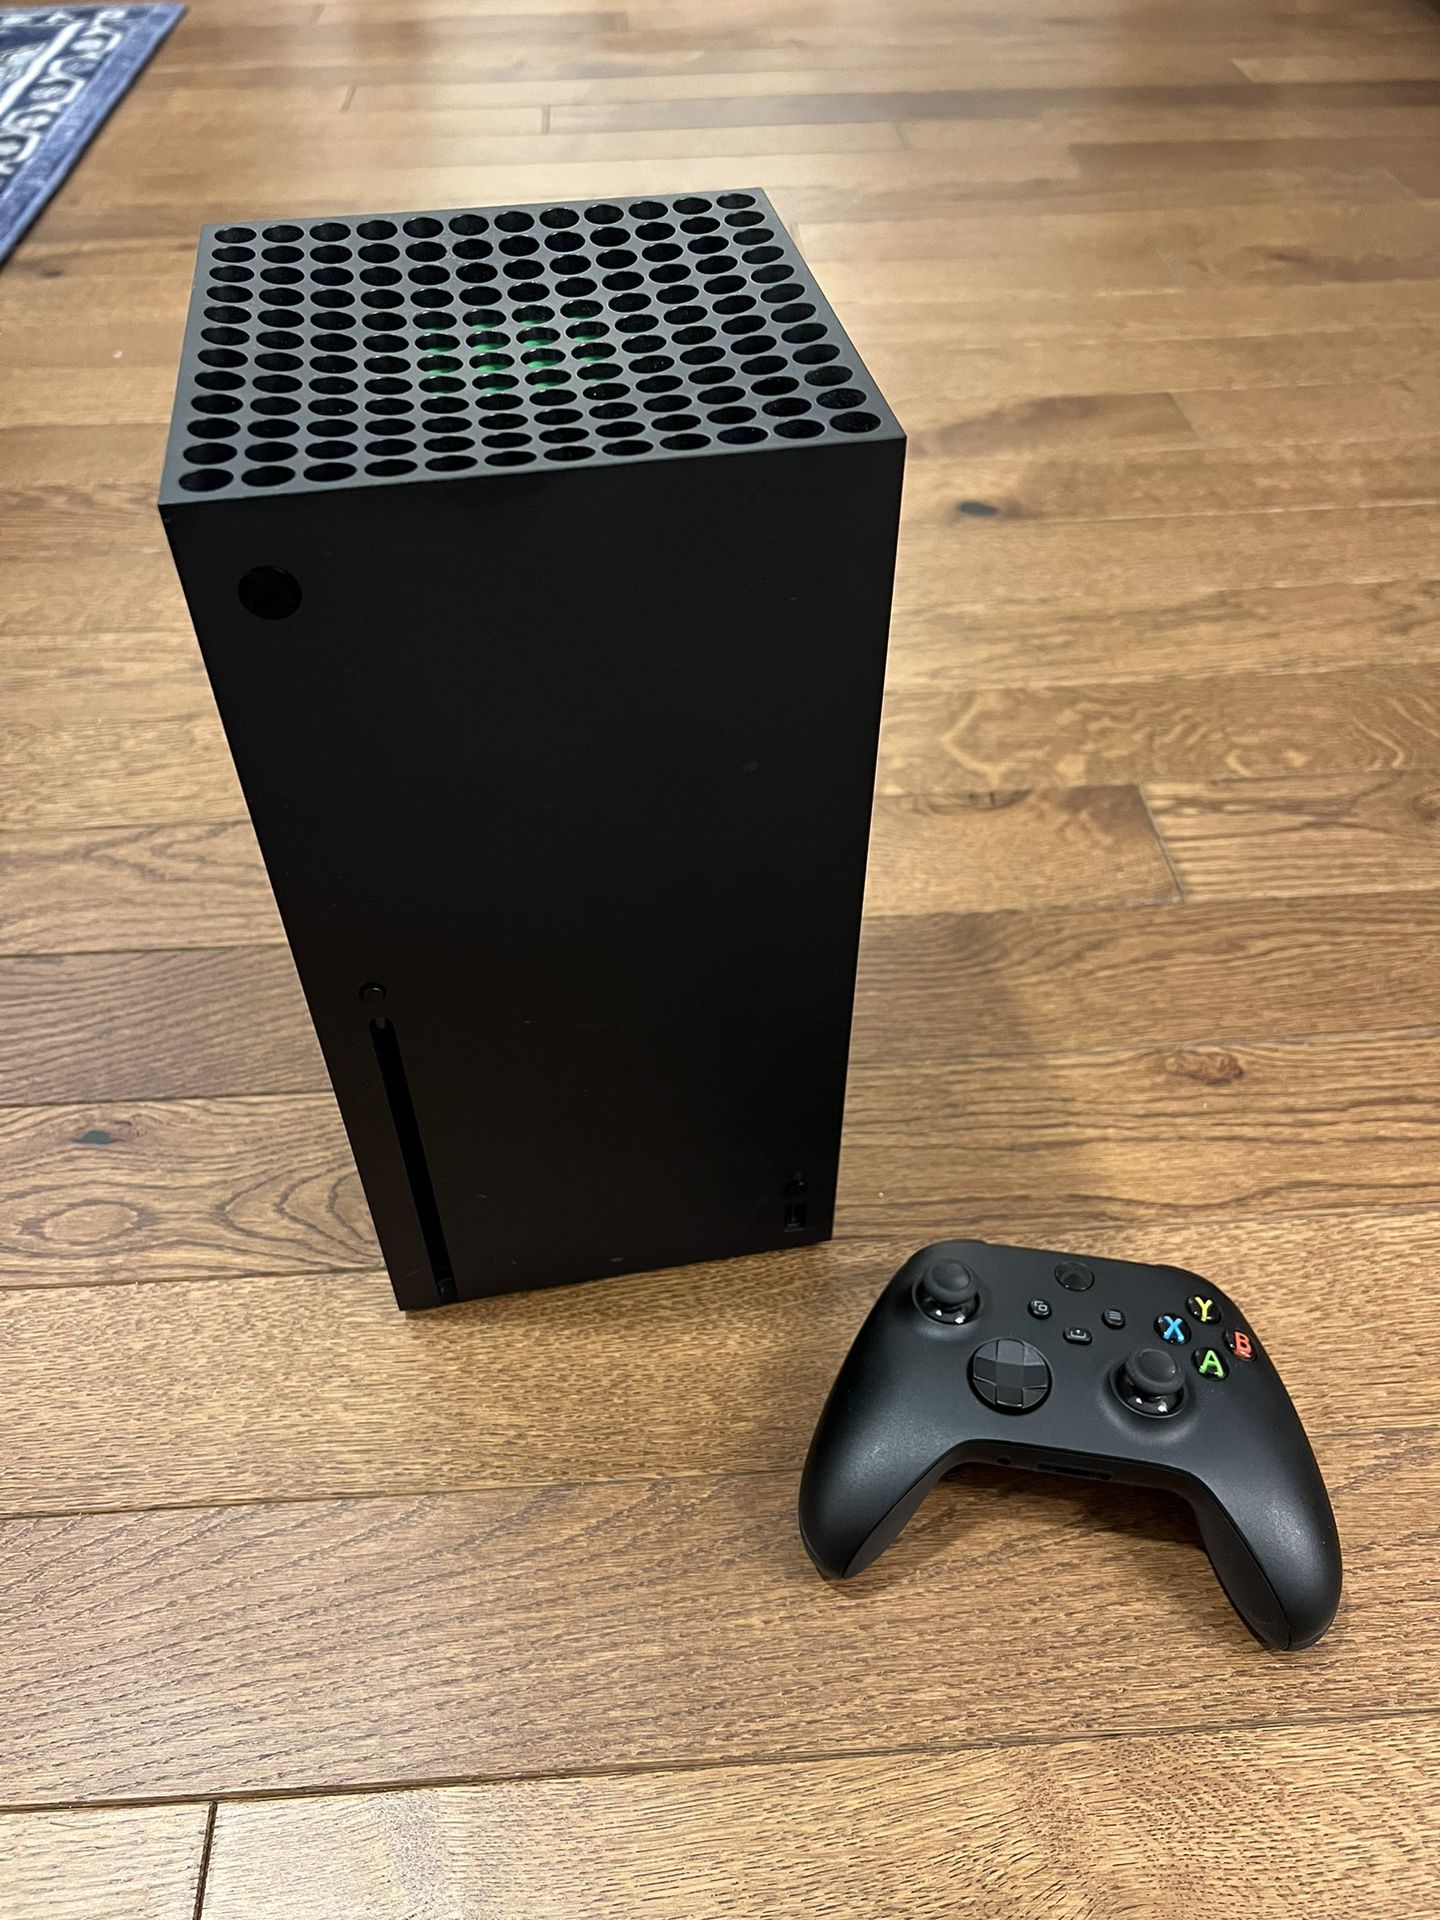 Xbox Series X Bundle